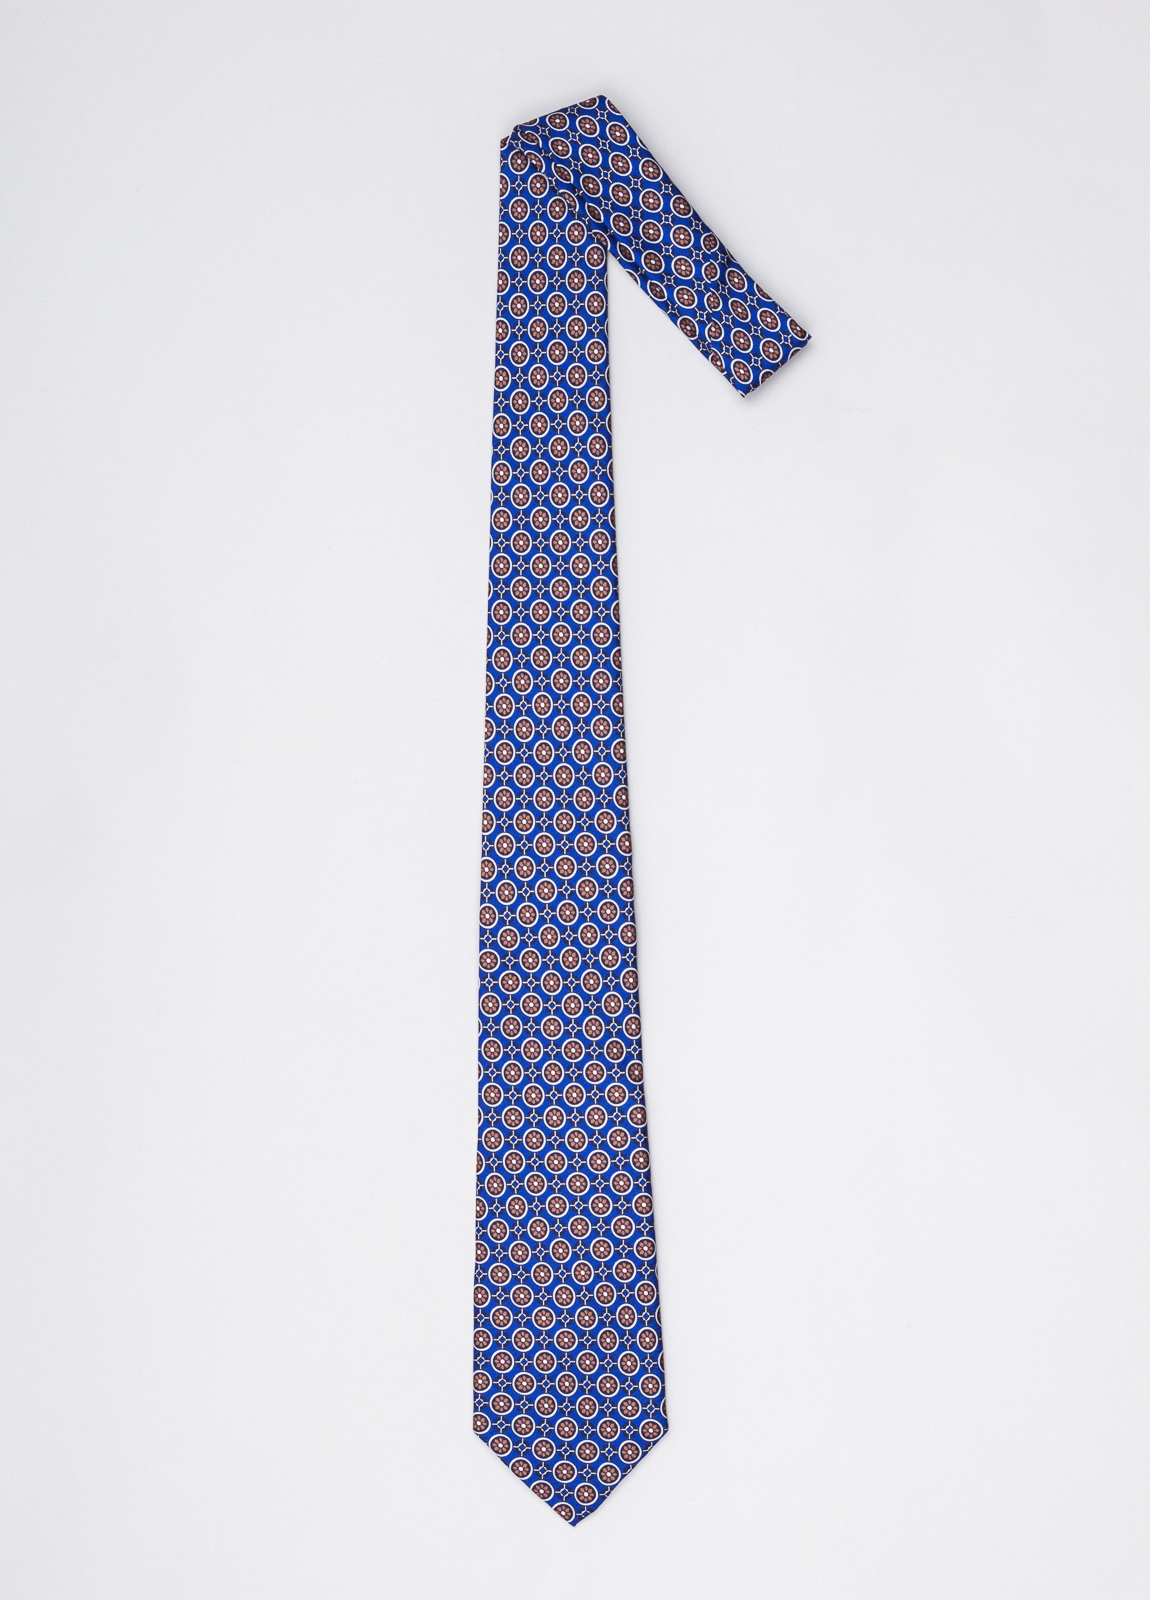 Corbata FUREST COLECCIÓN color azul con dibujo geométrico - Ítem1